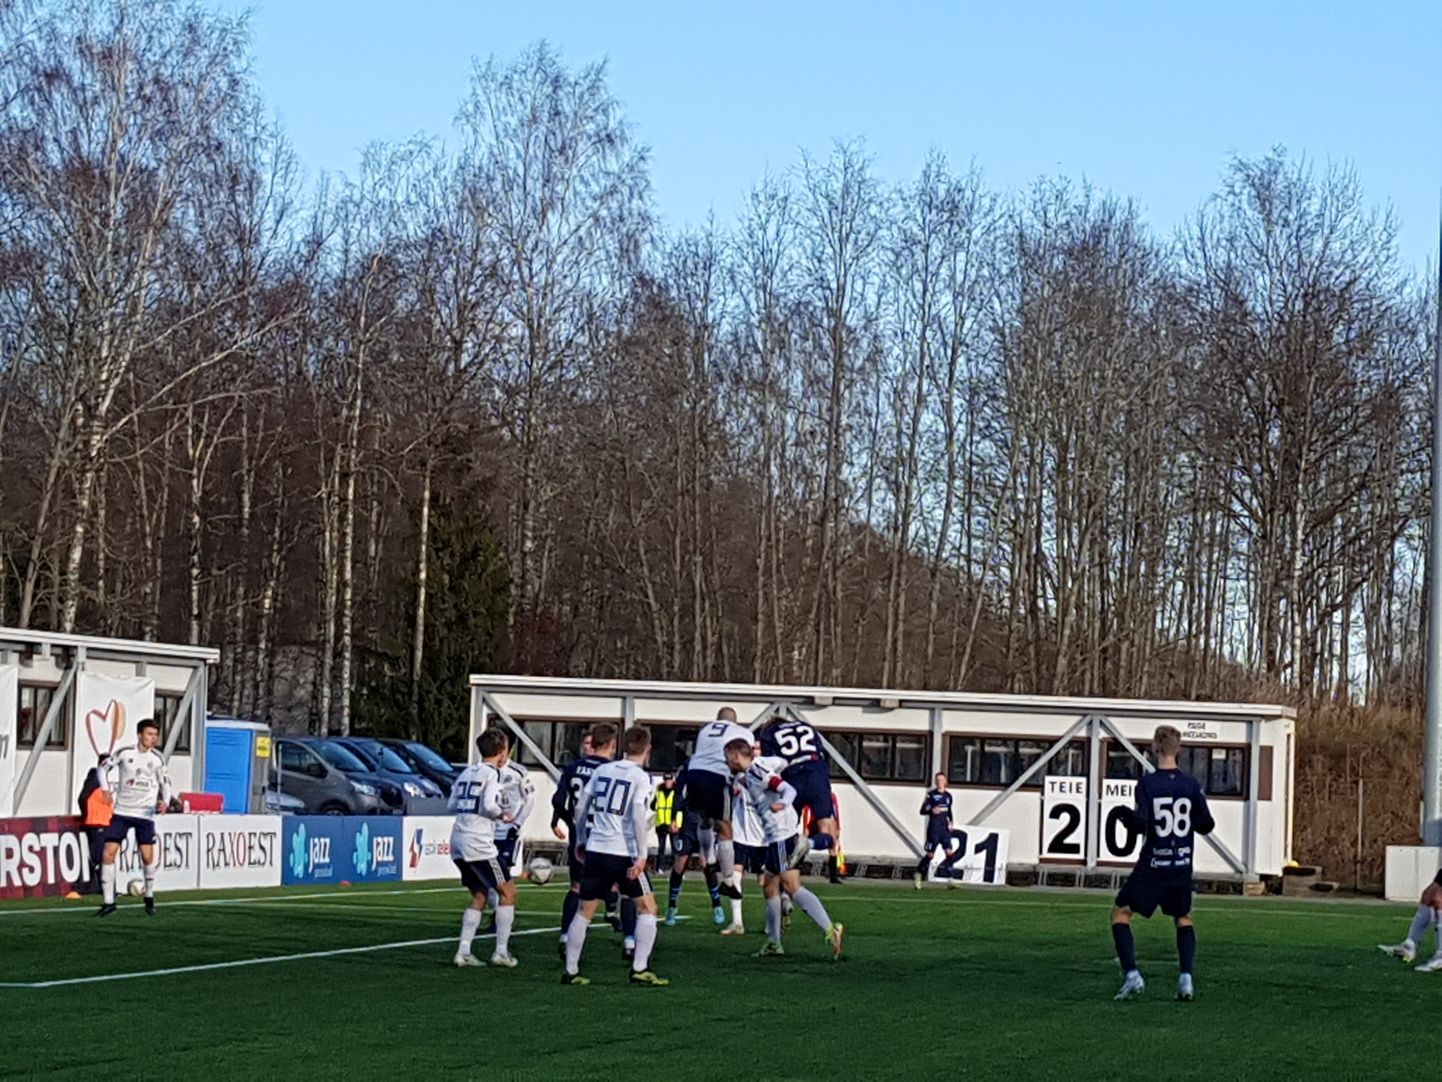 Paide Linnameeskond U21 viimasesse mängu jagus ka dramaatilisi hetki, kui mängijad lõid pead kokku ning sündmuskohale kutsuti ka kiirabi.